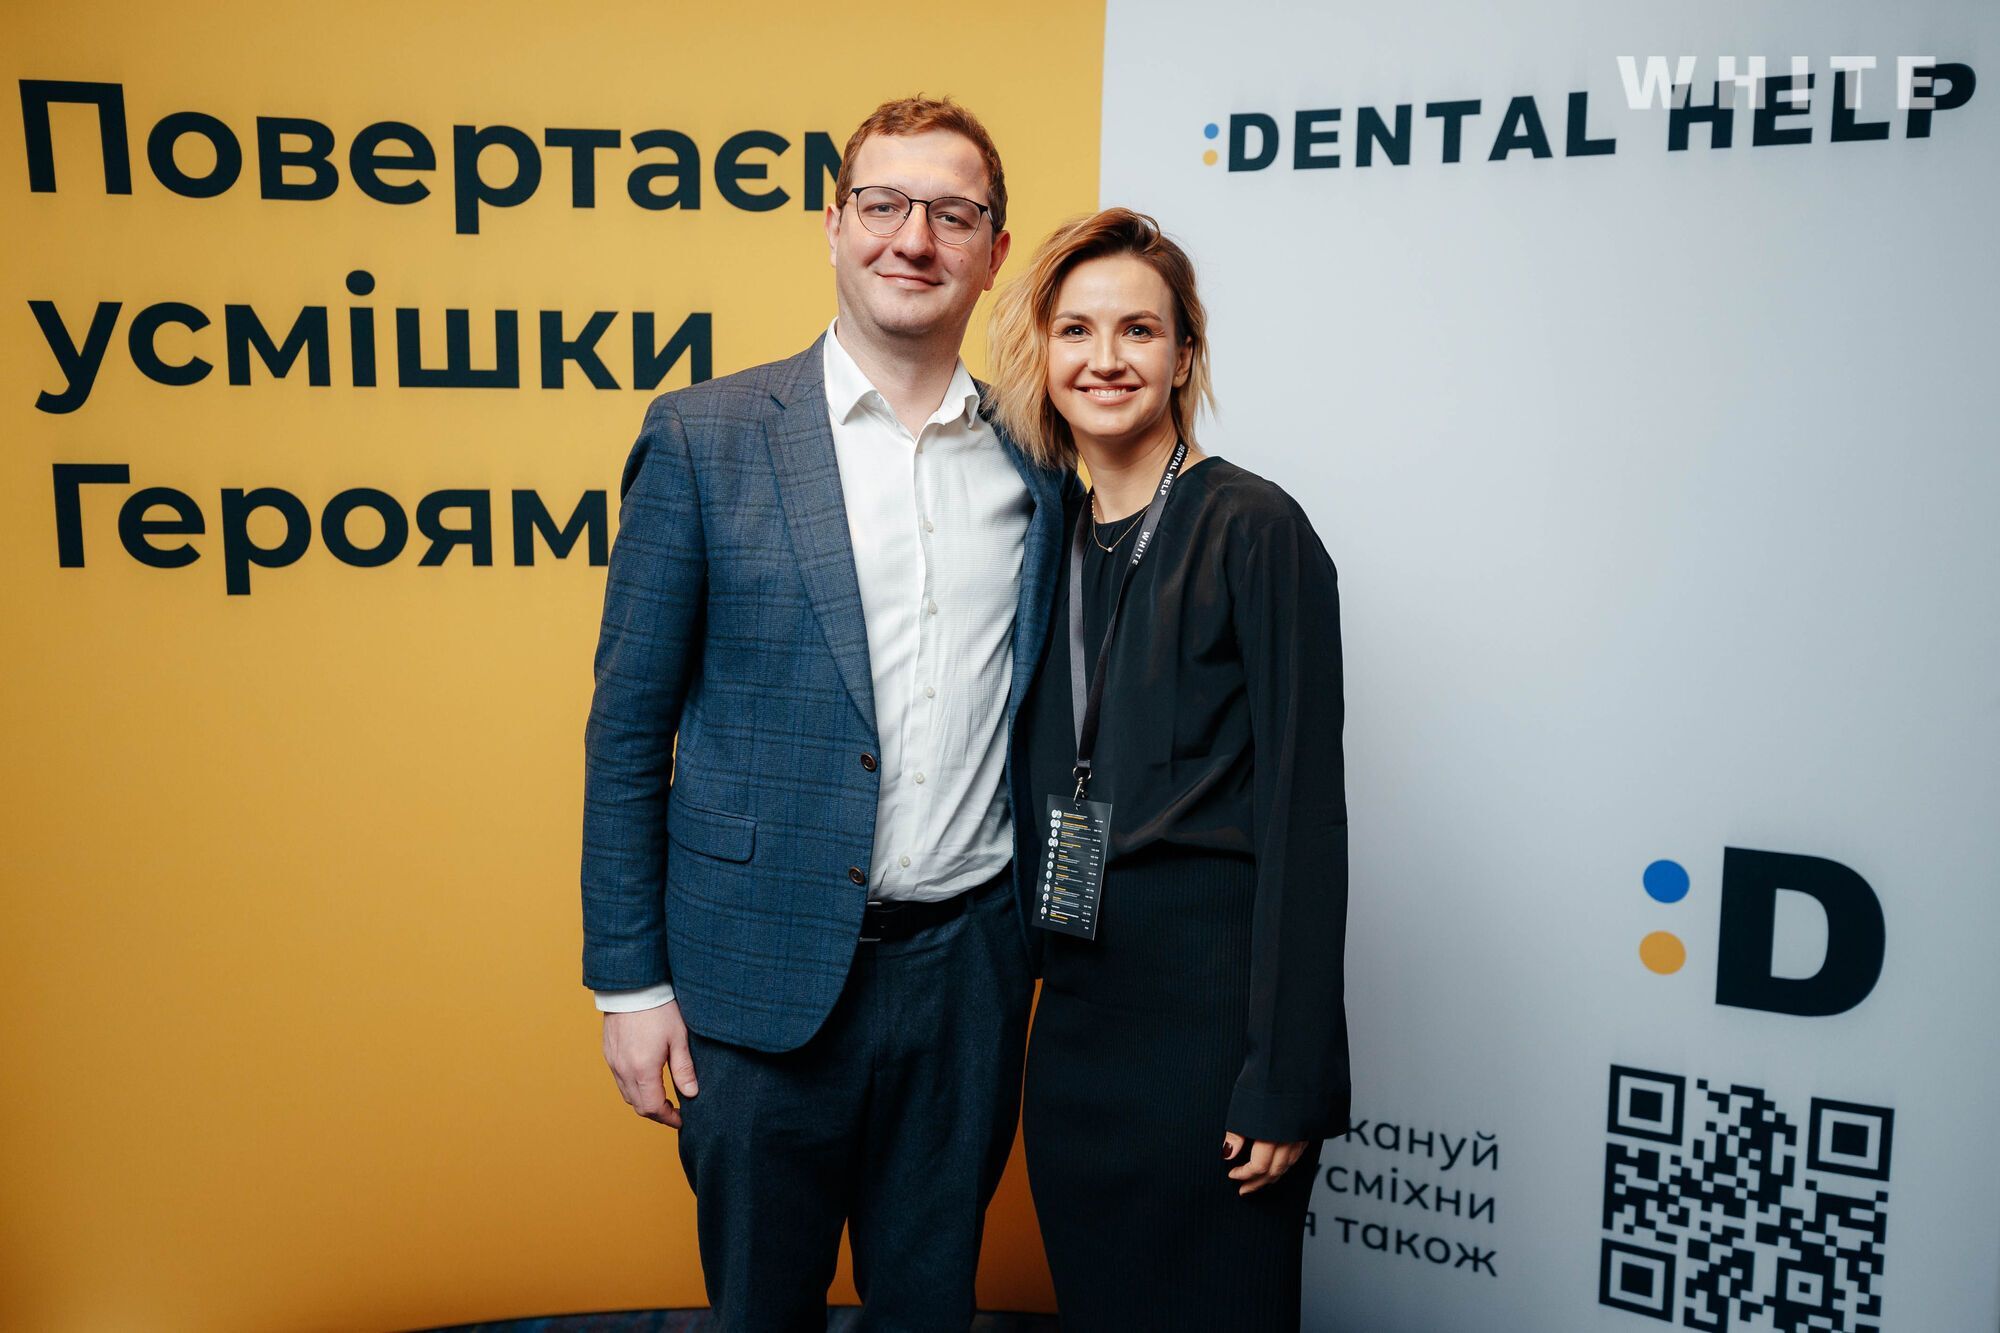 Українські стоматологи зібрали 1 млн гривень на відновлення усмішок захисникам